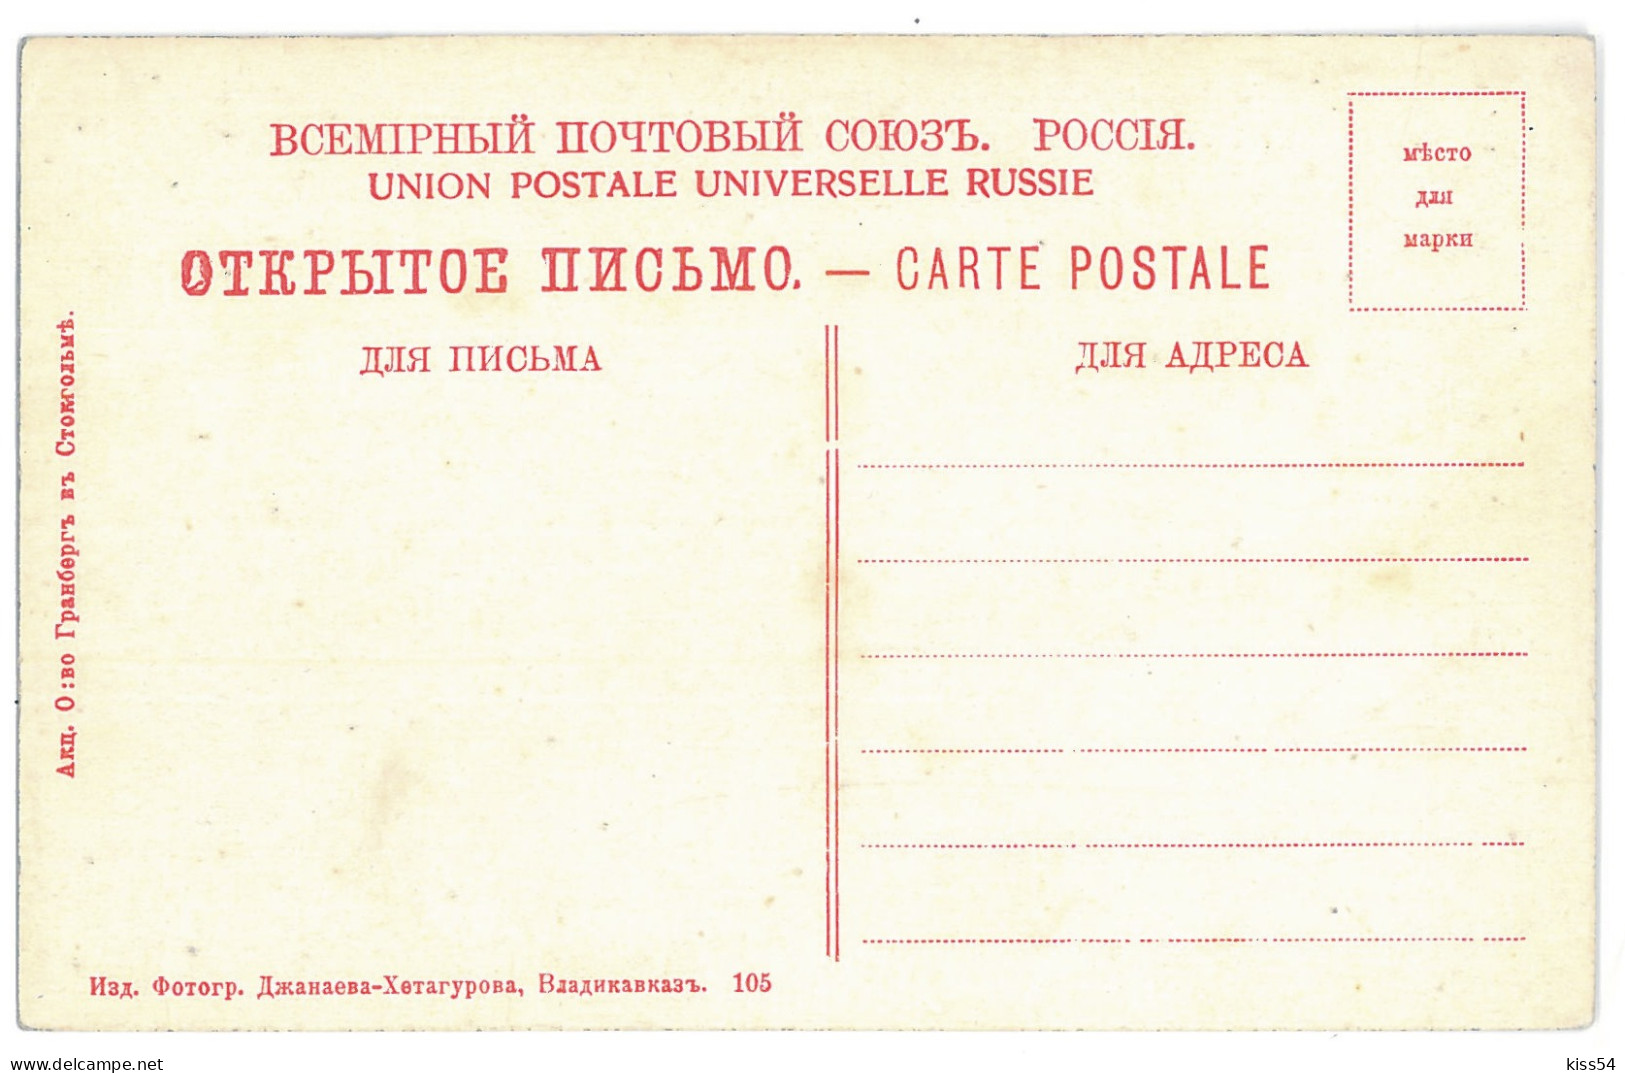 RUS 998 - 15271 DAGHESTAN, Bridge On KARA KOUISSOU, Russia - Old Postcard - Unused - Rusland